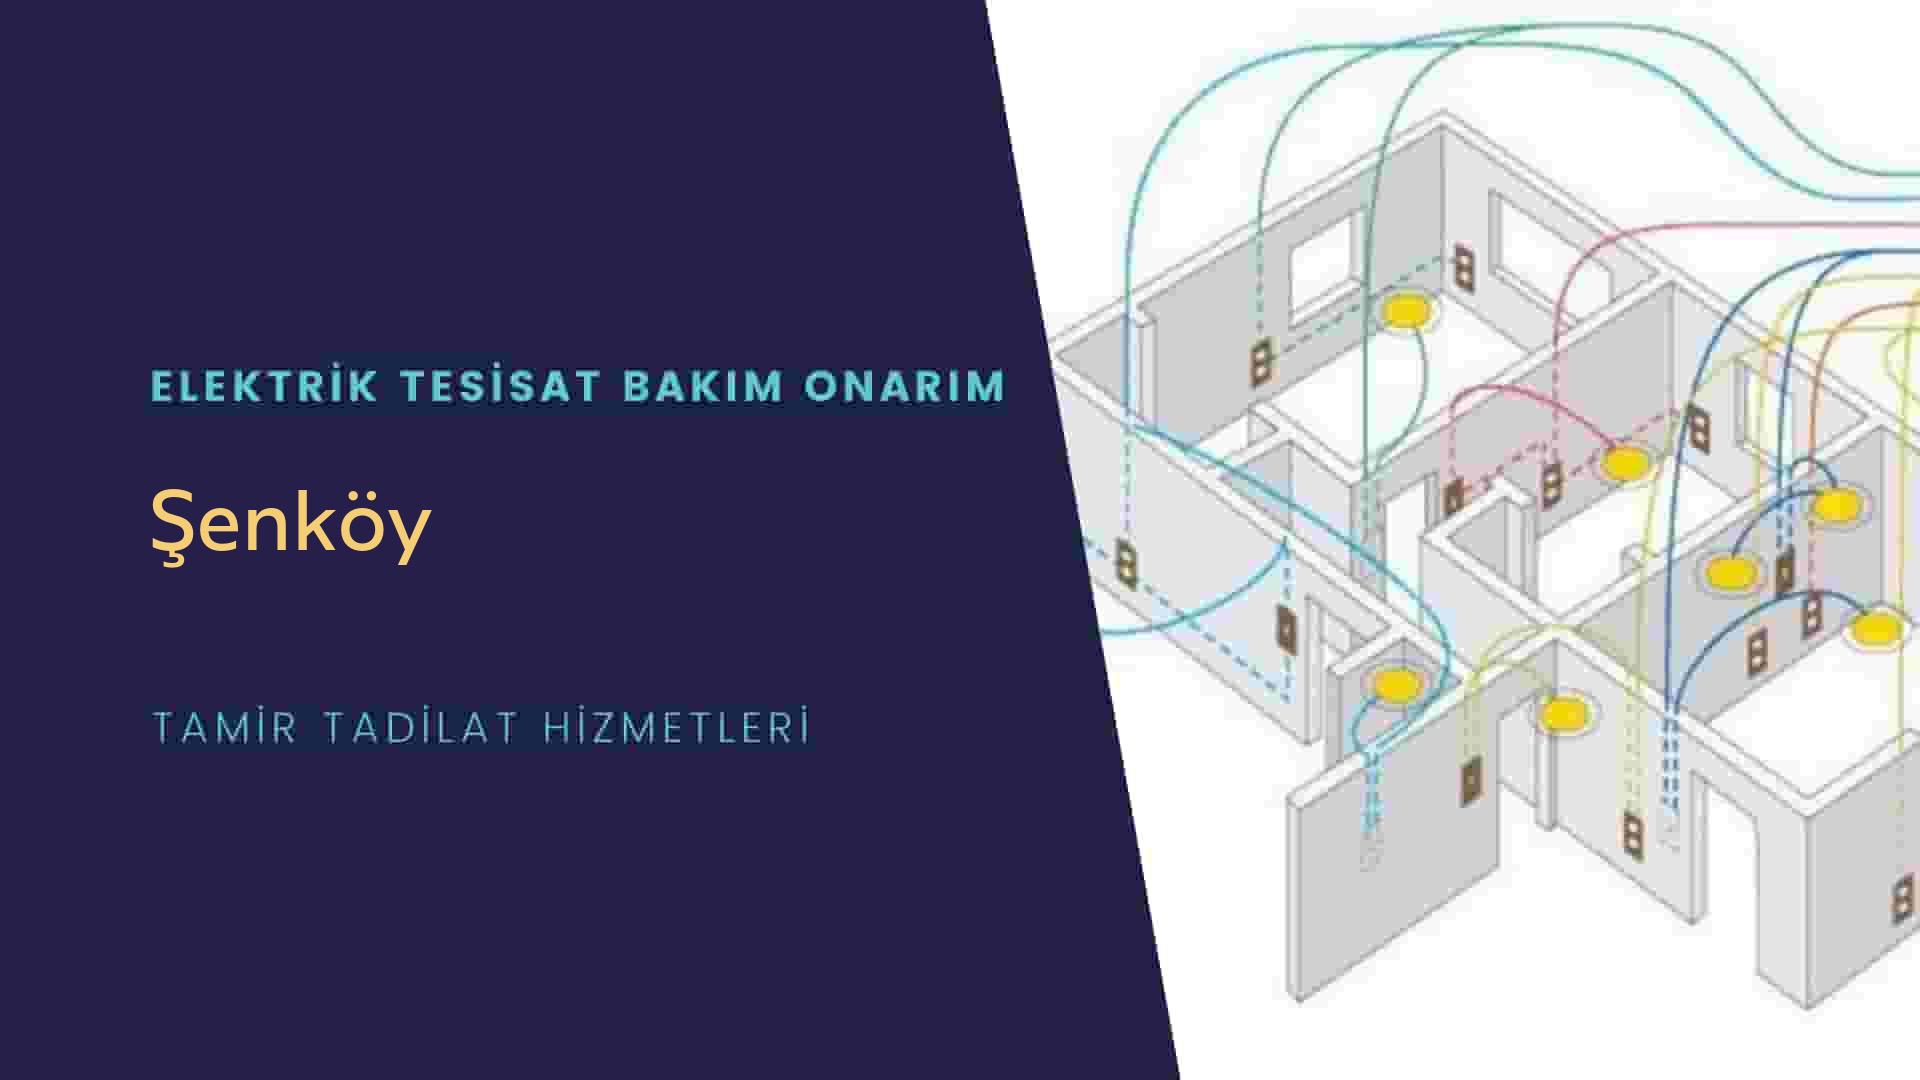 Şenköy'de elektrik tesisatı ustalarımı arıyorsunuz doğru adrestenizi Şenköy elektrik tesisatı ustalarımız 7/24 sizlere hizmet vermekten mutluluk duyar.